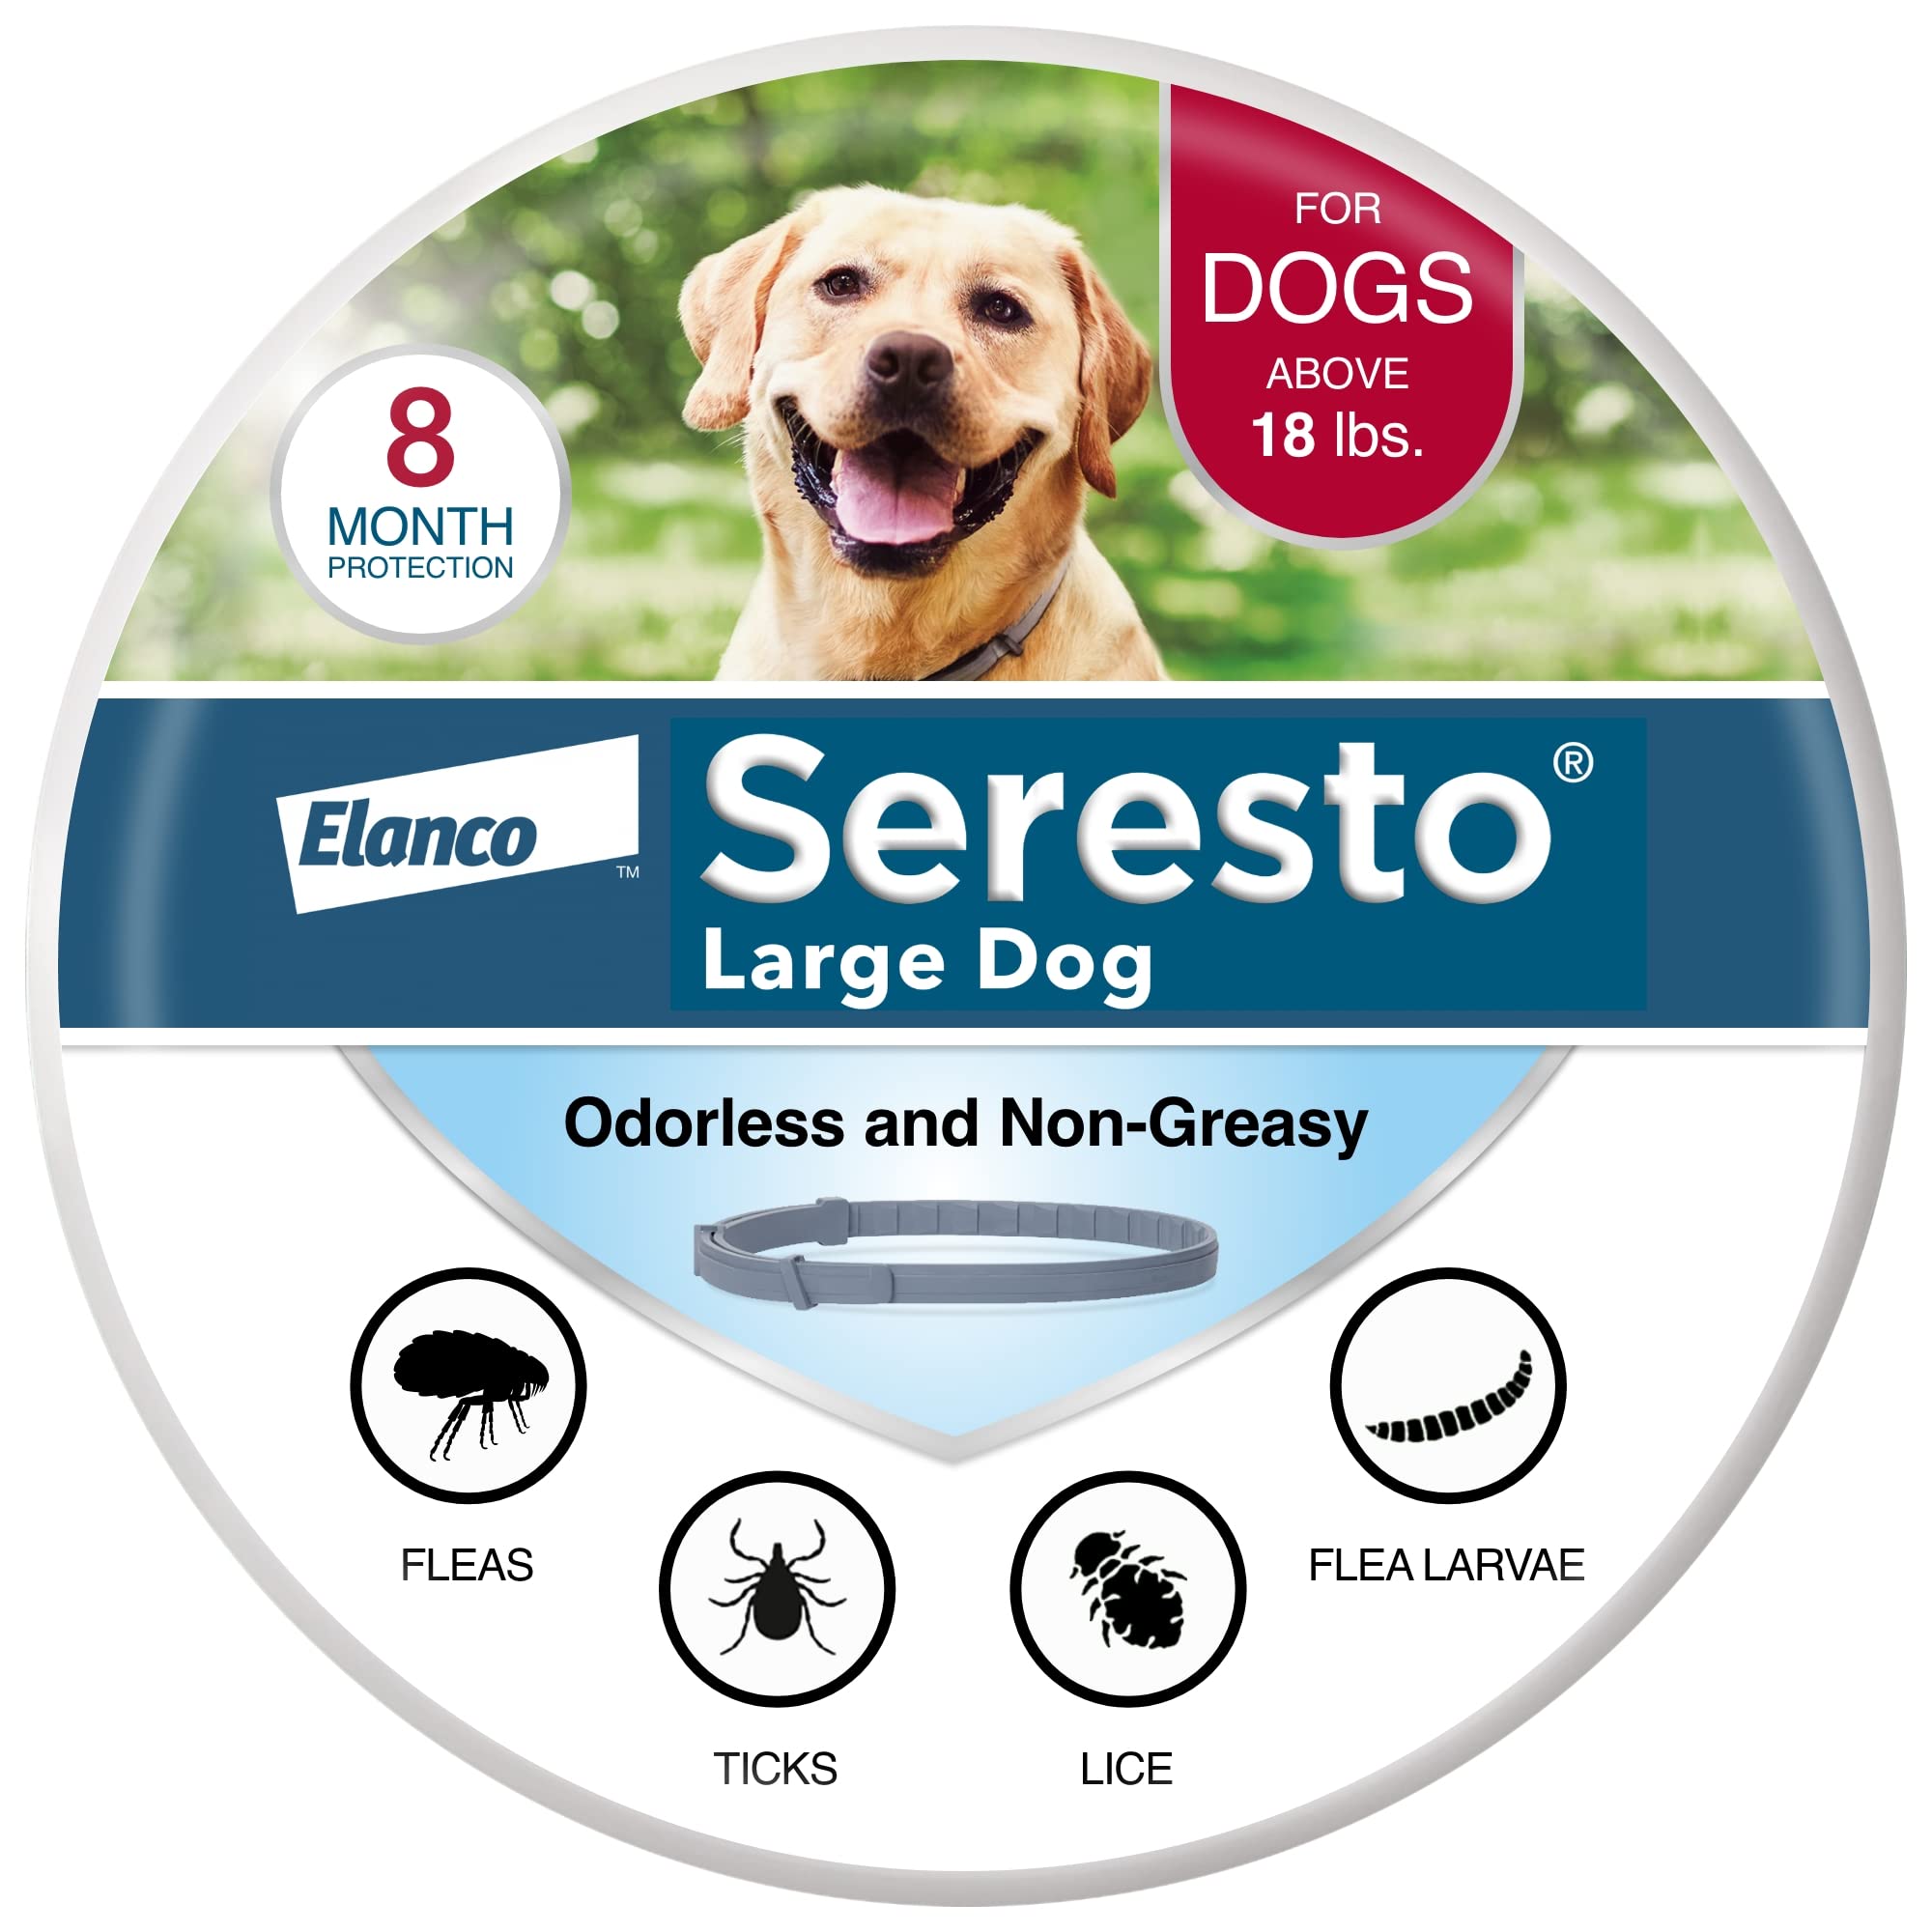 Seresto Collar de prevención y tratamiento contra pulgas y garrapatas recomendado por veterinarios para perros grandes de más de 18 libras. | 8 meses de protección